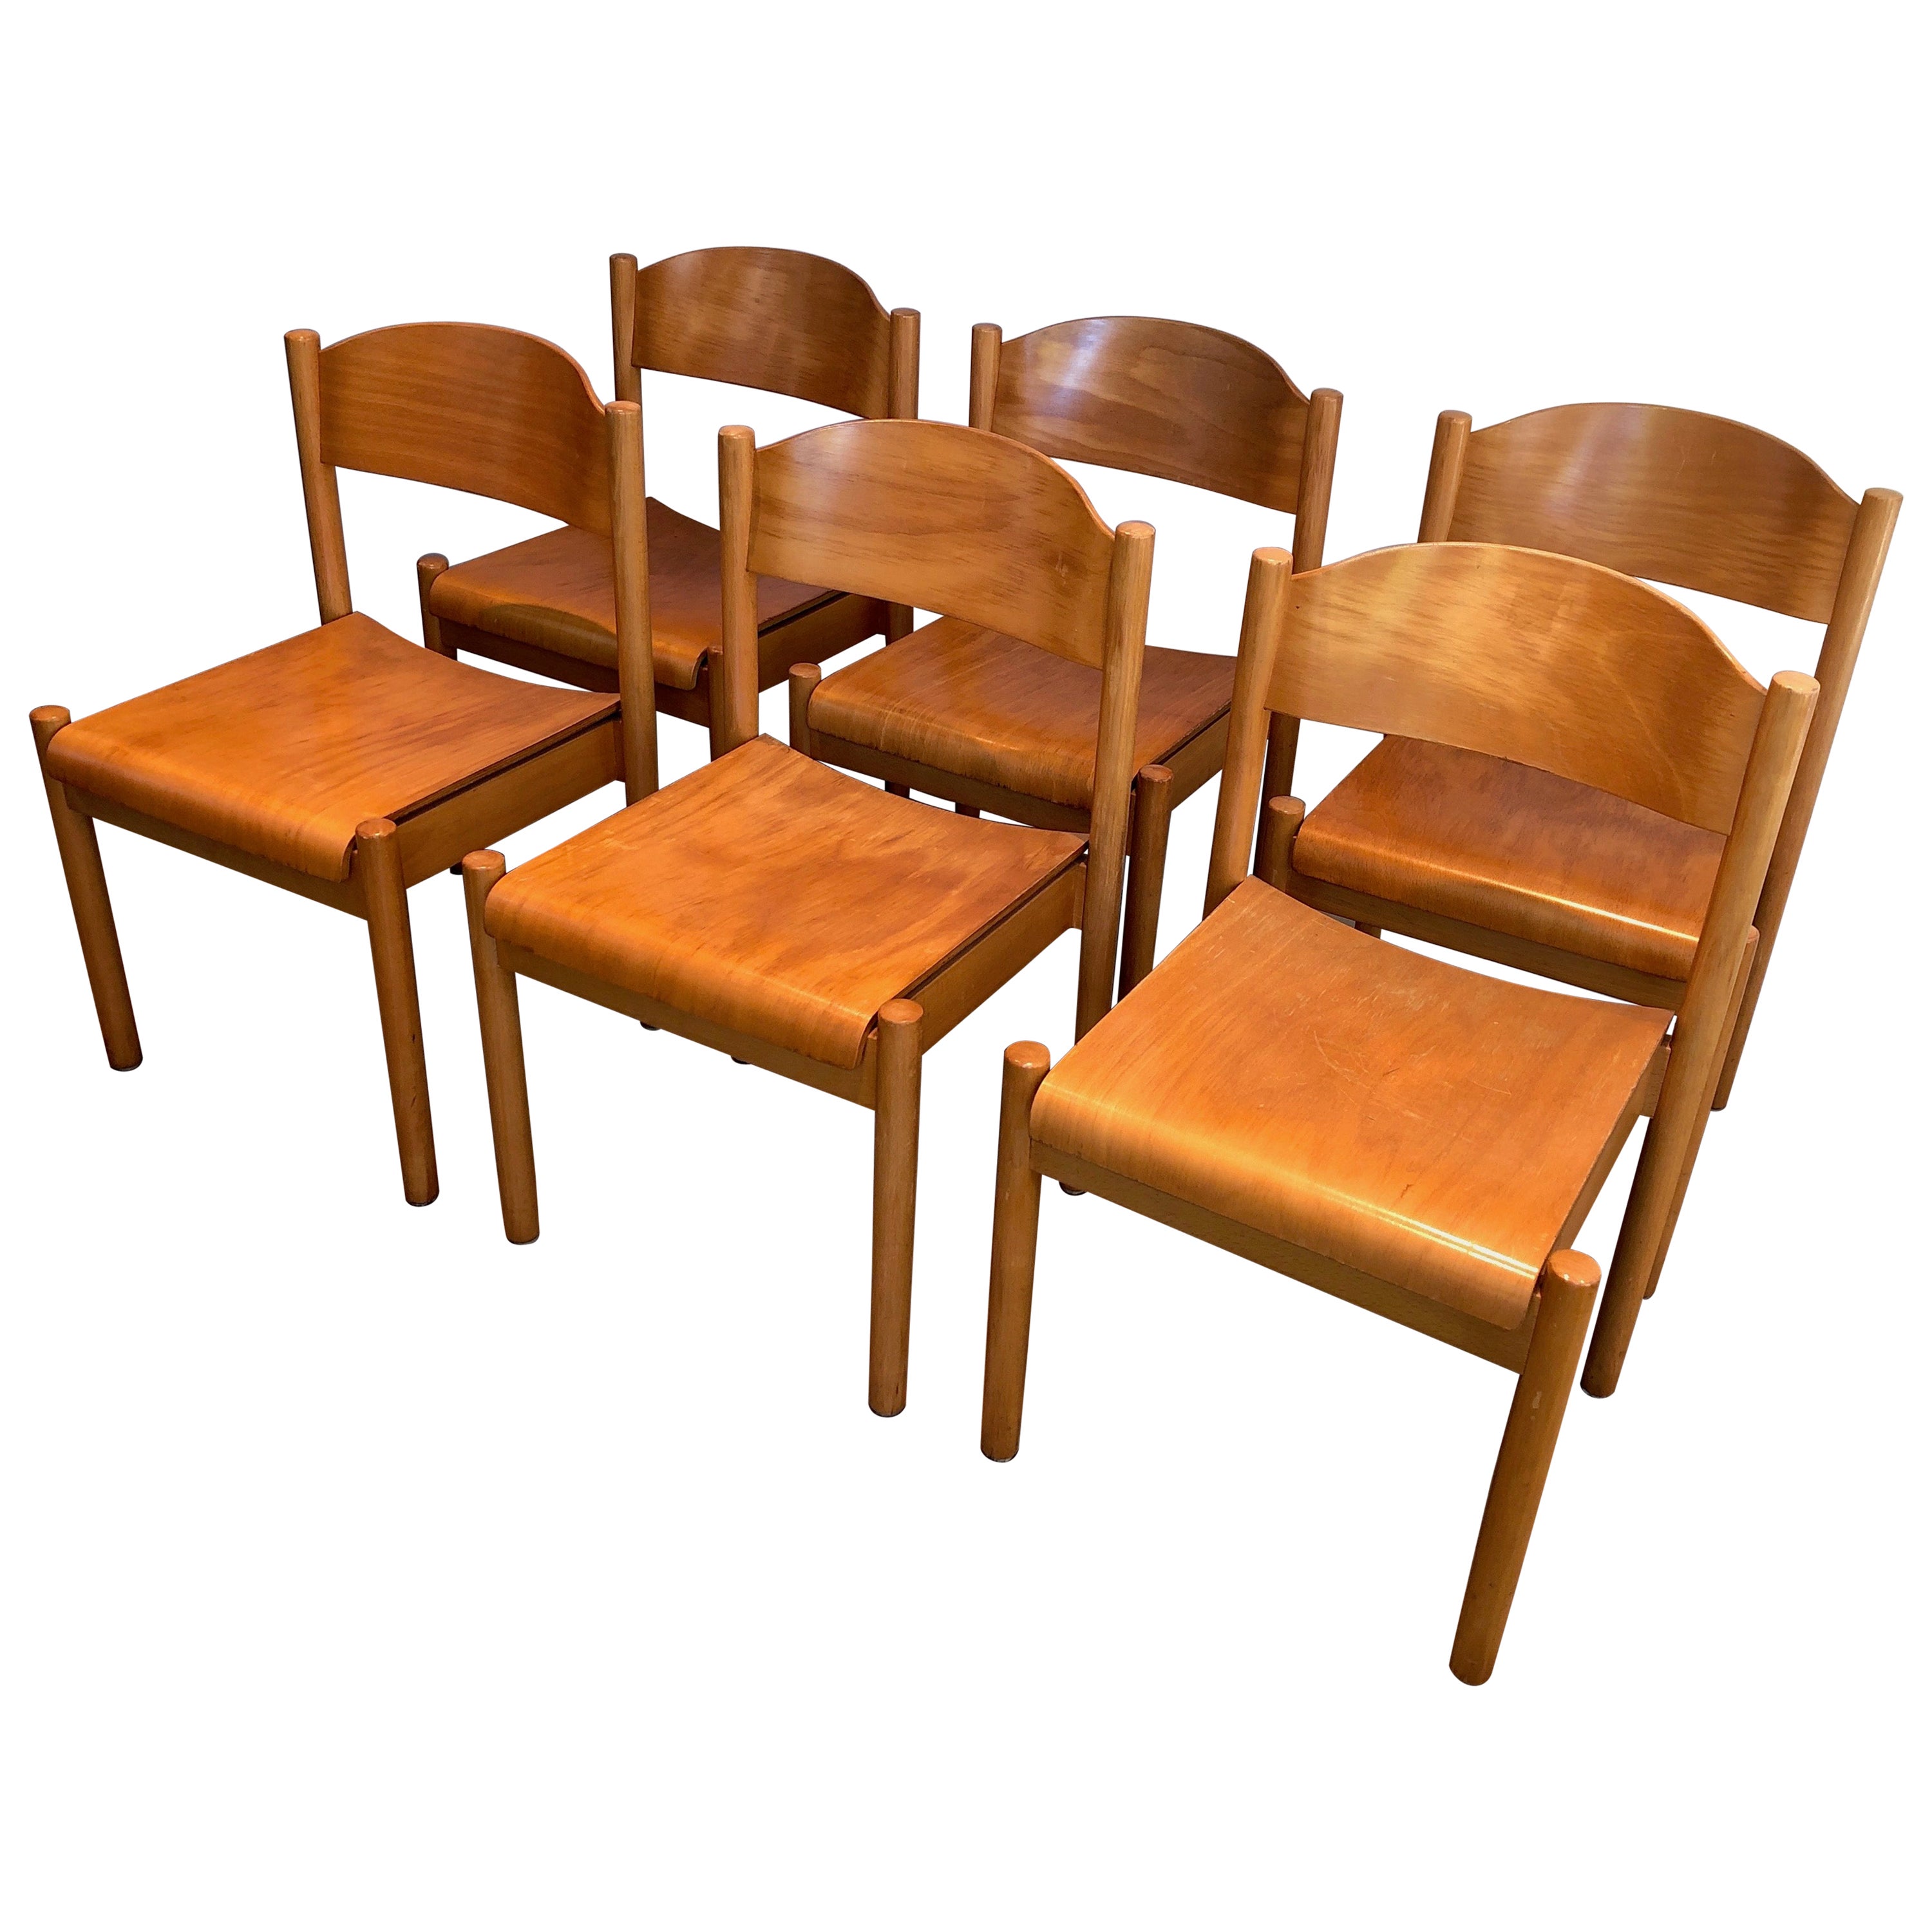 Ensemble de 6 chaises empilables en pin, œuvre allemande de Karl Klipper, datant d'environ 1970